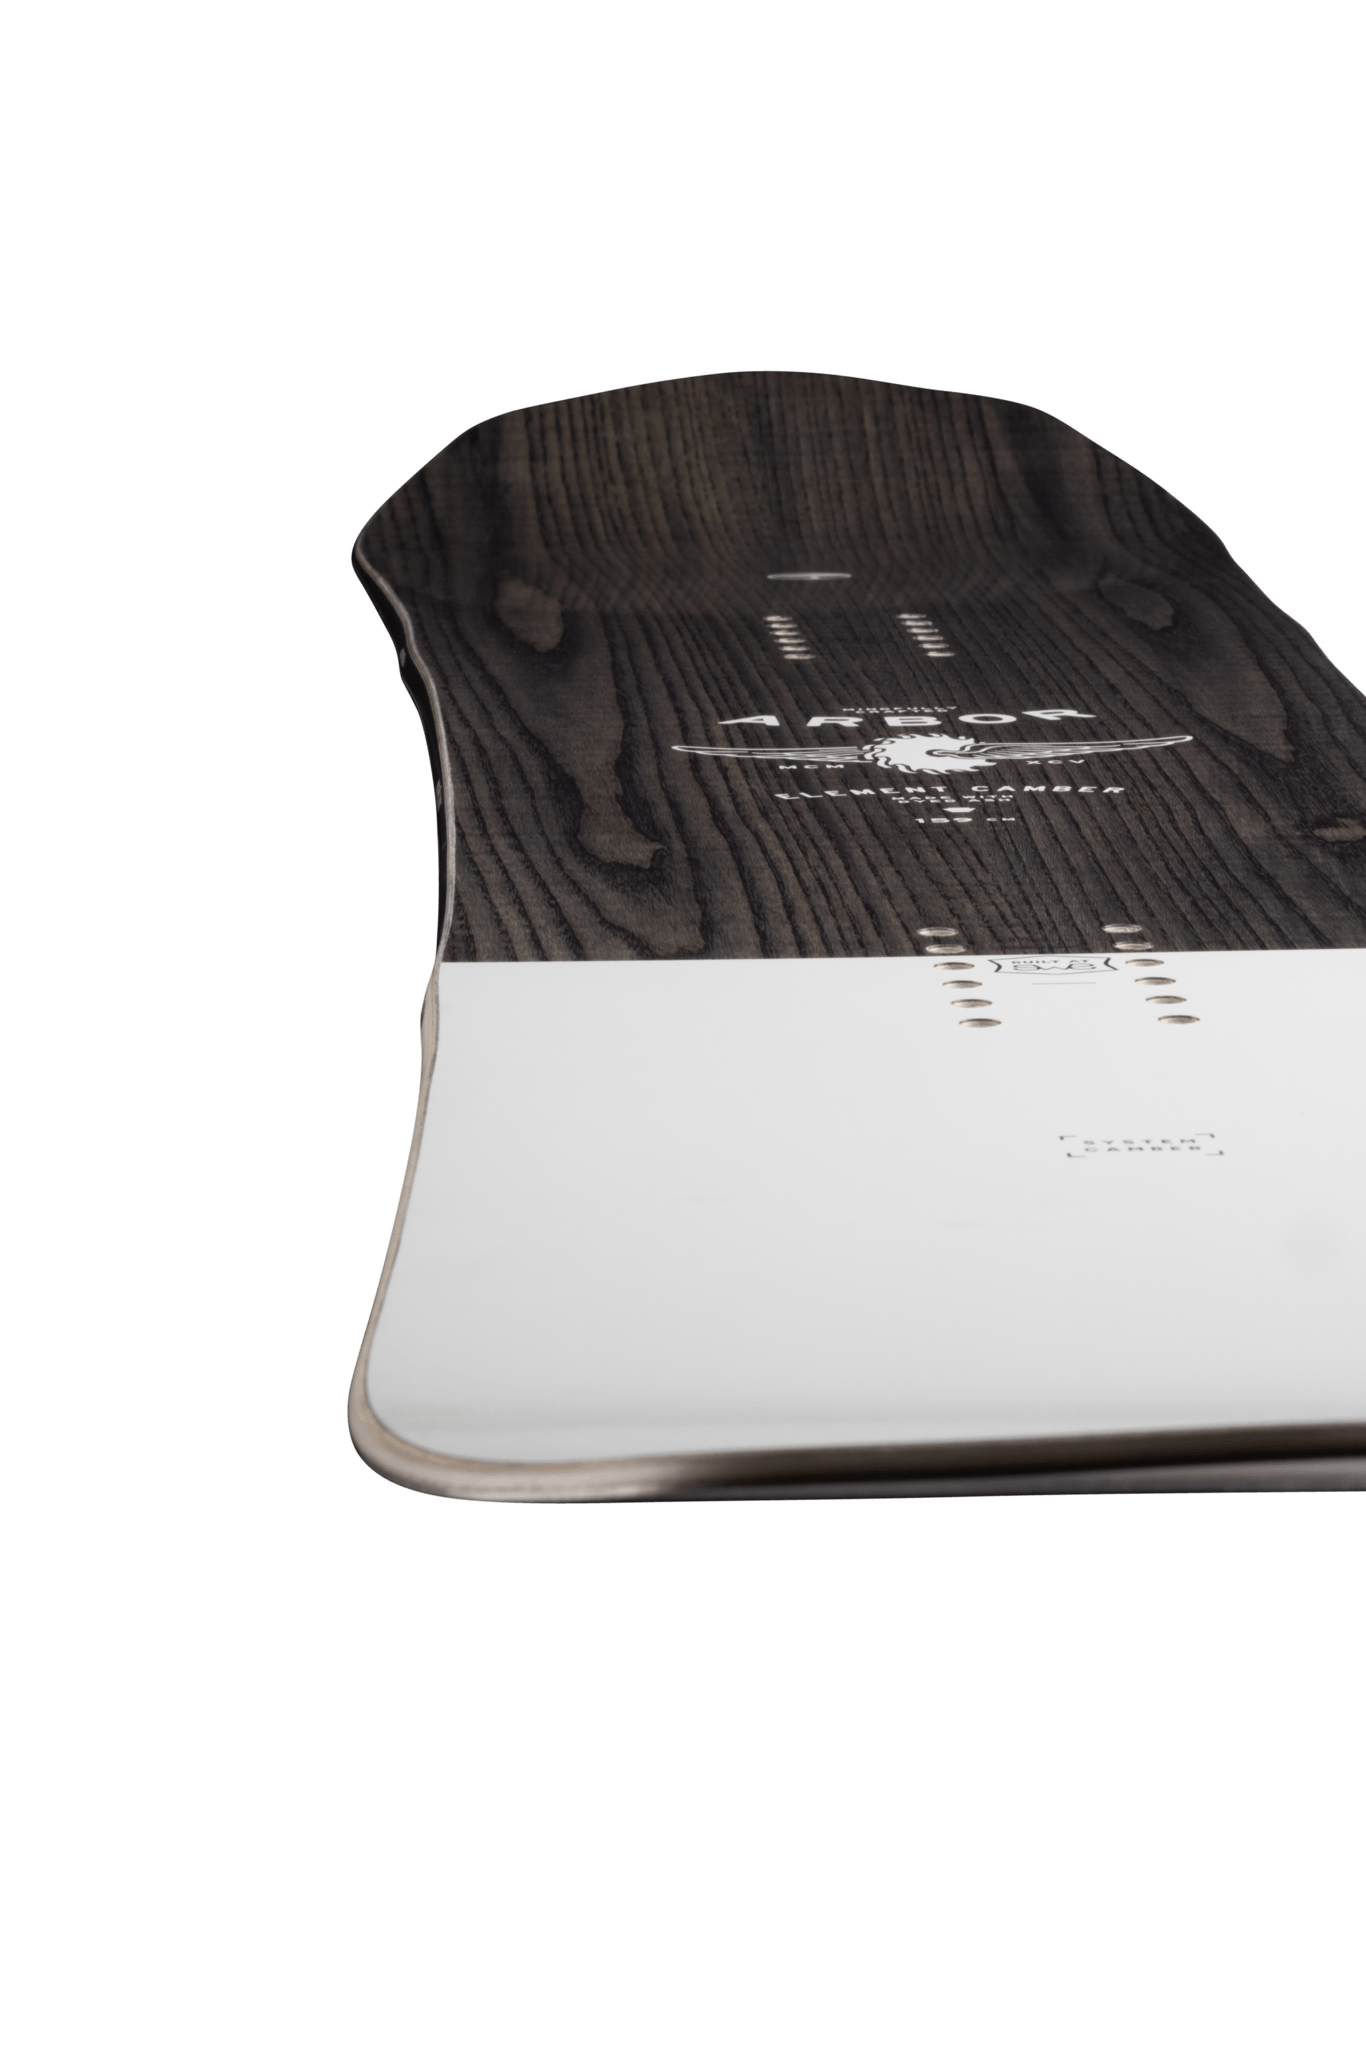 Arbor Element Camber Snowboard · 2023 · 162 cm